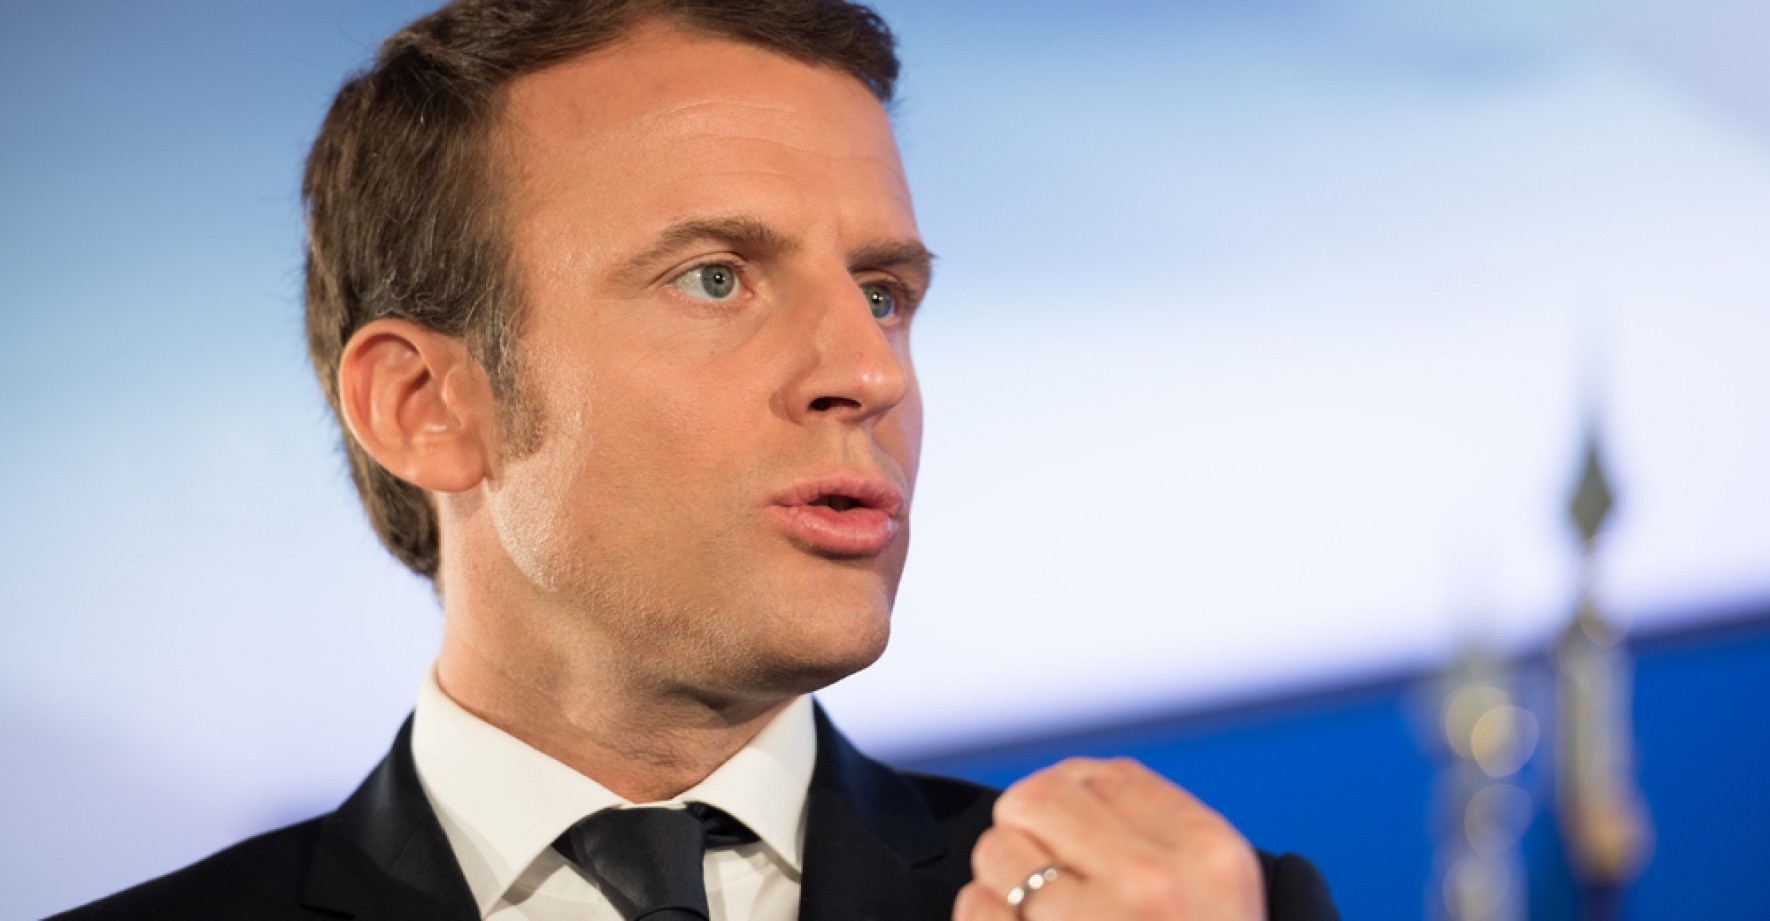 VIDEO: Macron si v debatě o důchodech uvědomil, že má luxusní hodinky, tak si je tajně sundal